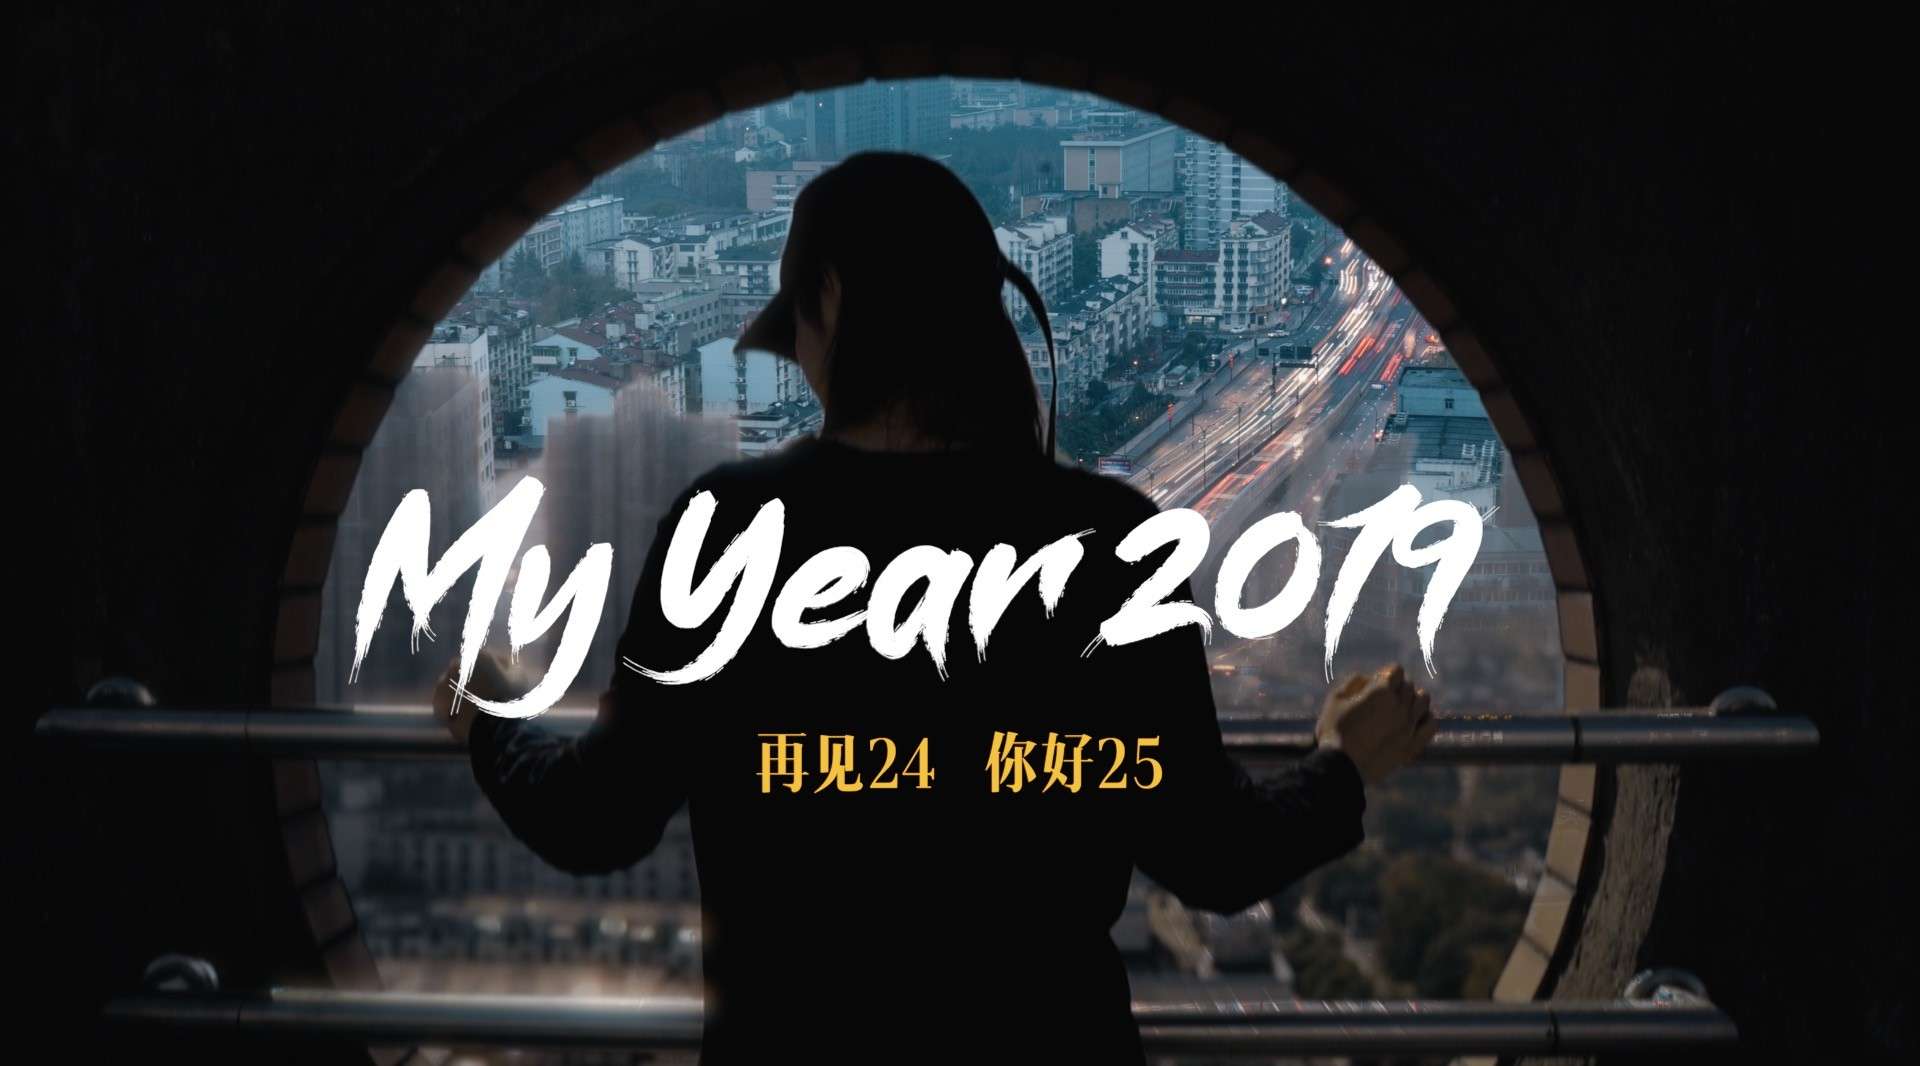 【My year 2019】再见24岁，你好25岁